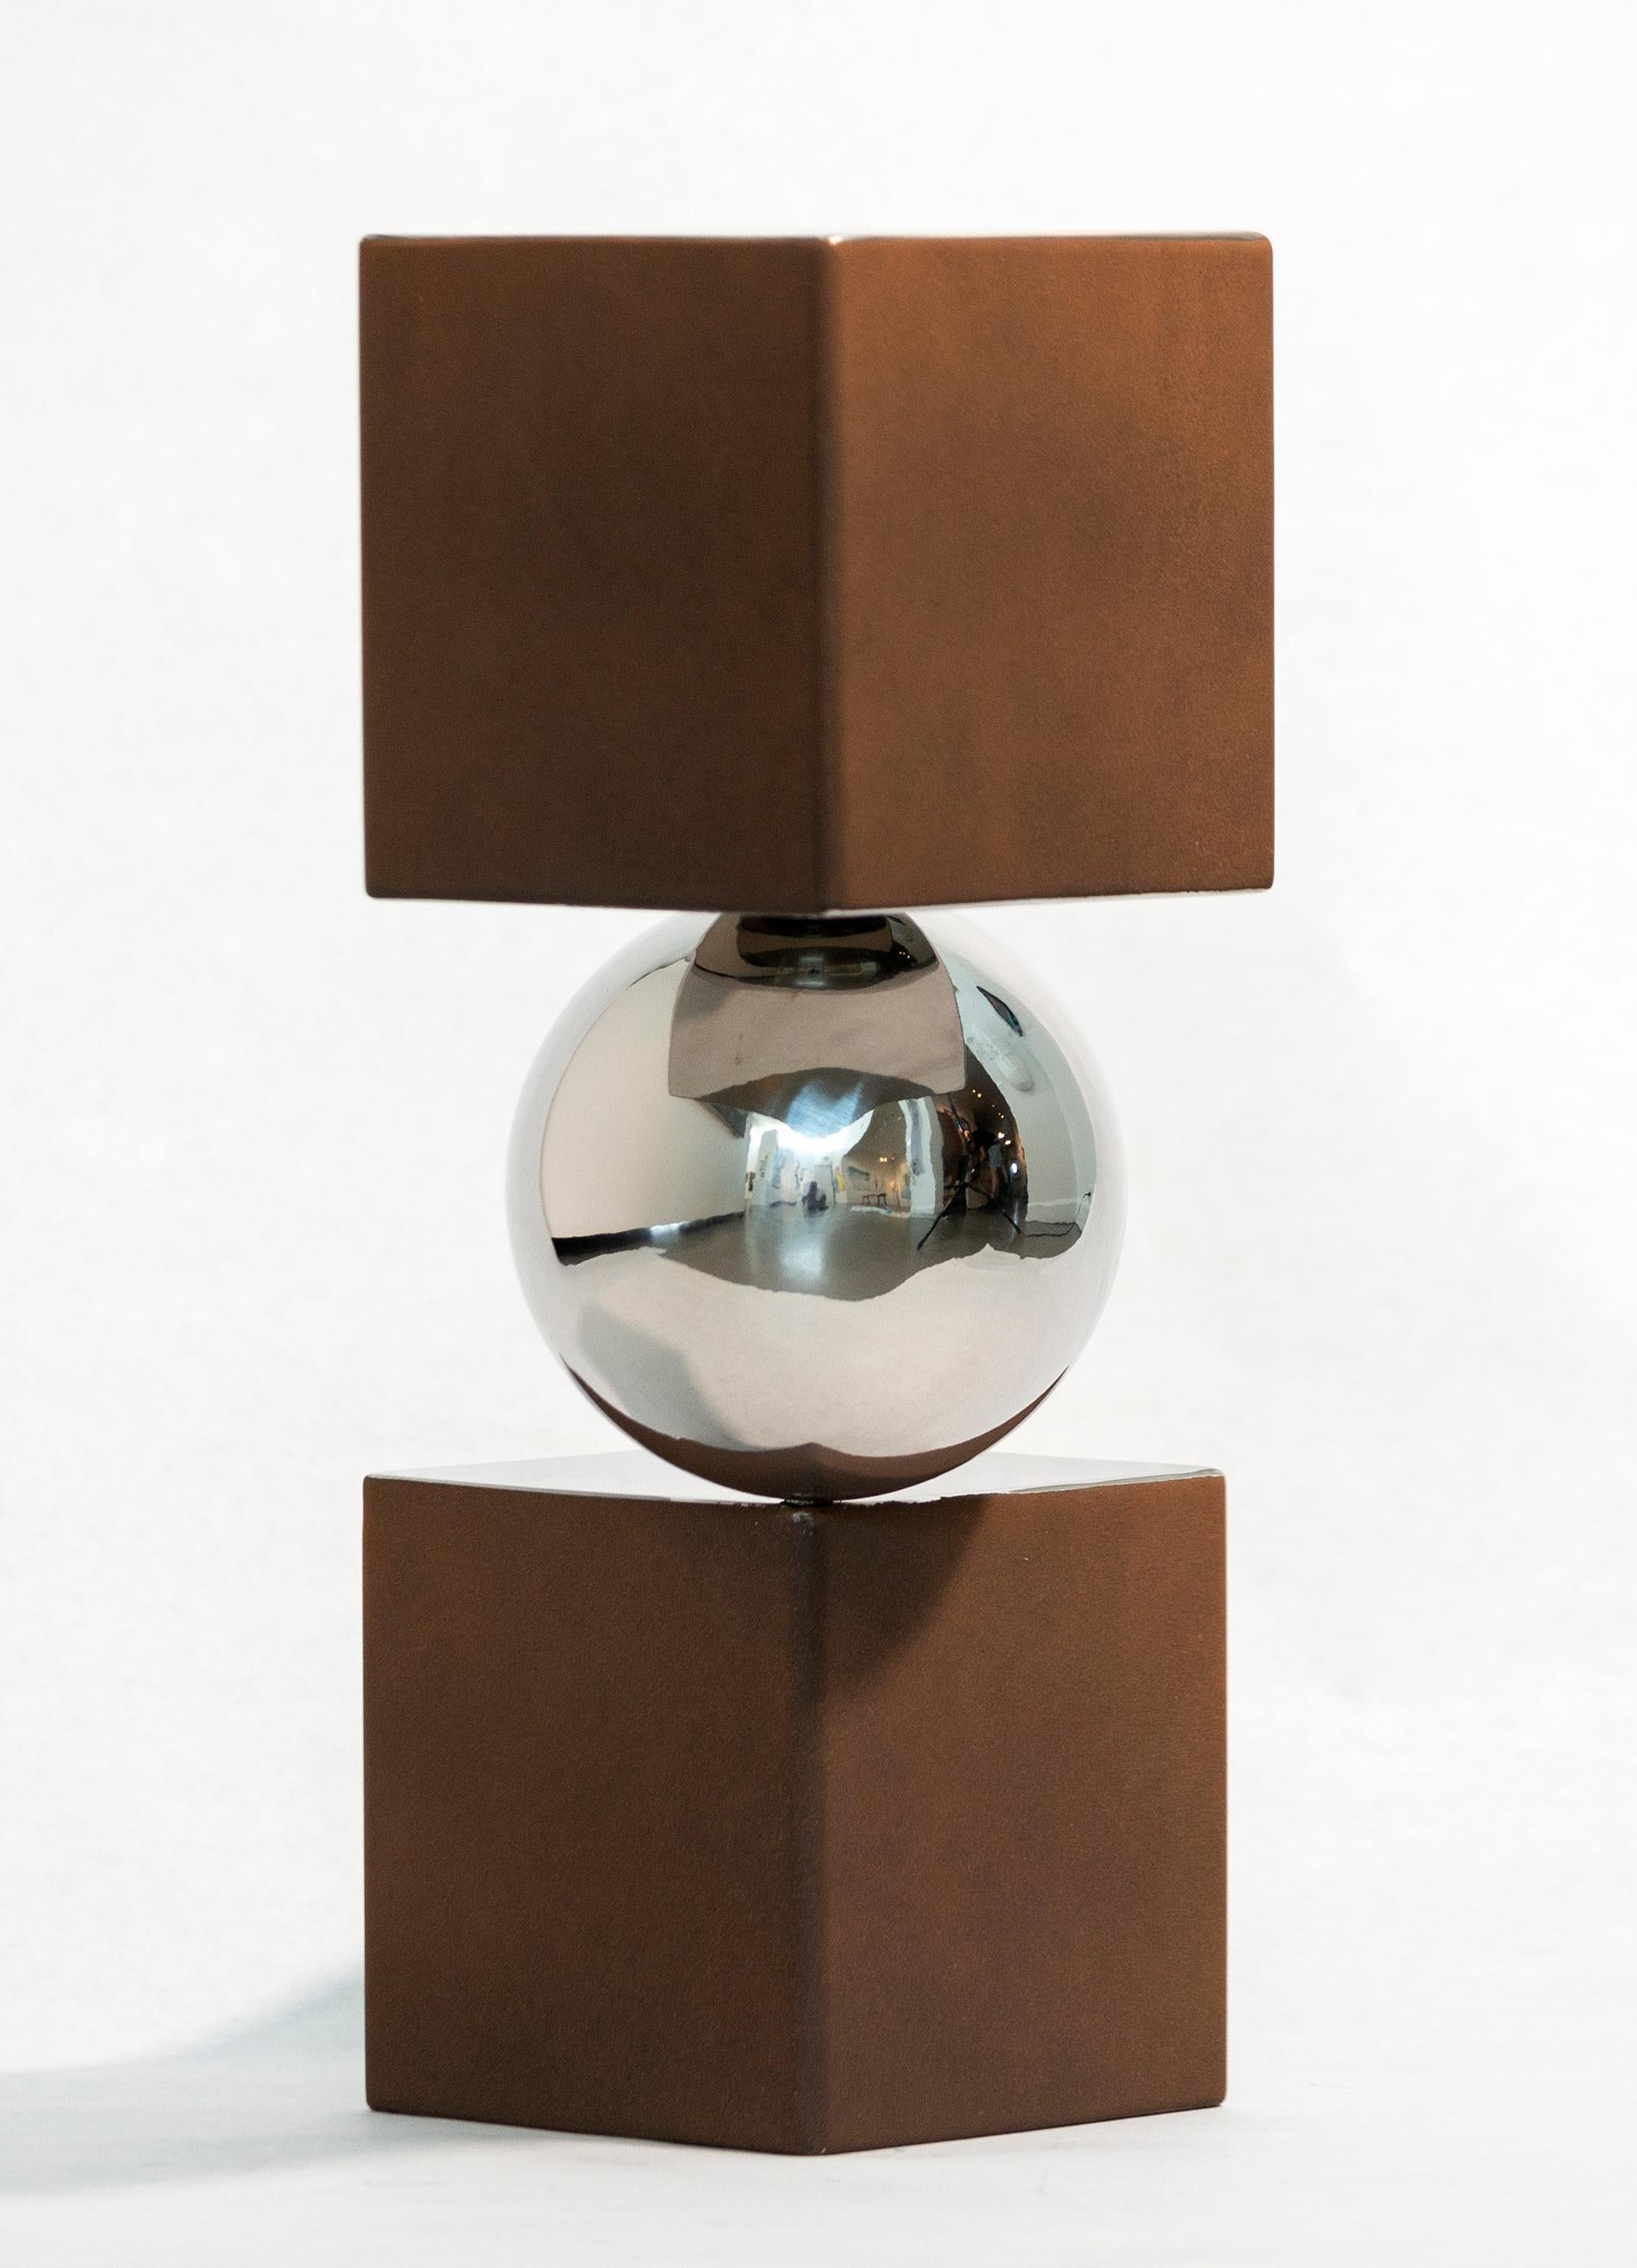 Une sphère en aluminium poli se tient astucieusement en équilibre entre deux cubes de couleur rouille et argent dans cette sculpture de table moderne et dynamique de Philippe Pallafray. Equilibre